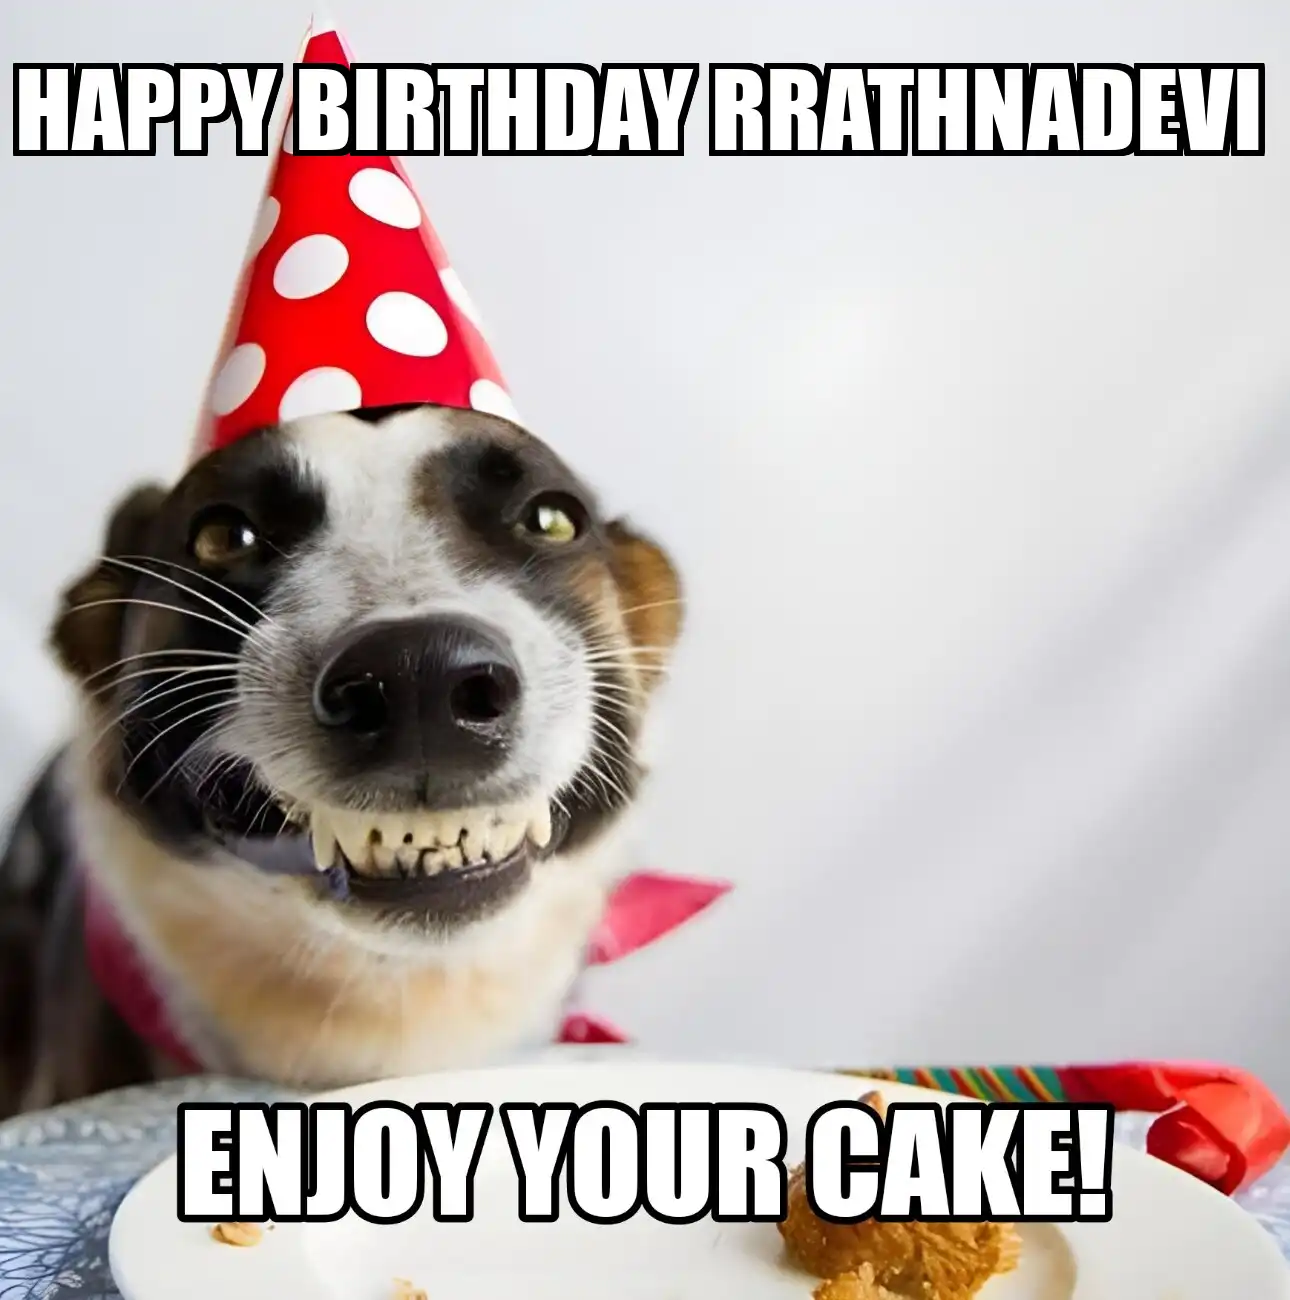 Happy Birthday Rrathnadevi Enjoy Your Cake Dog Meme